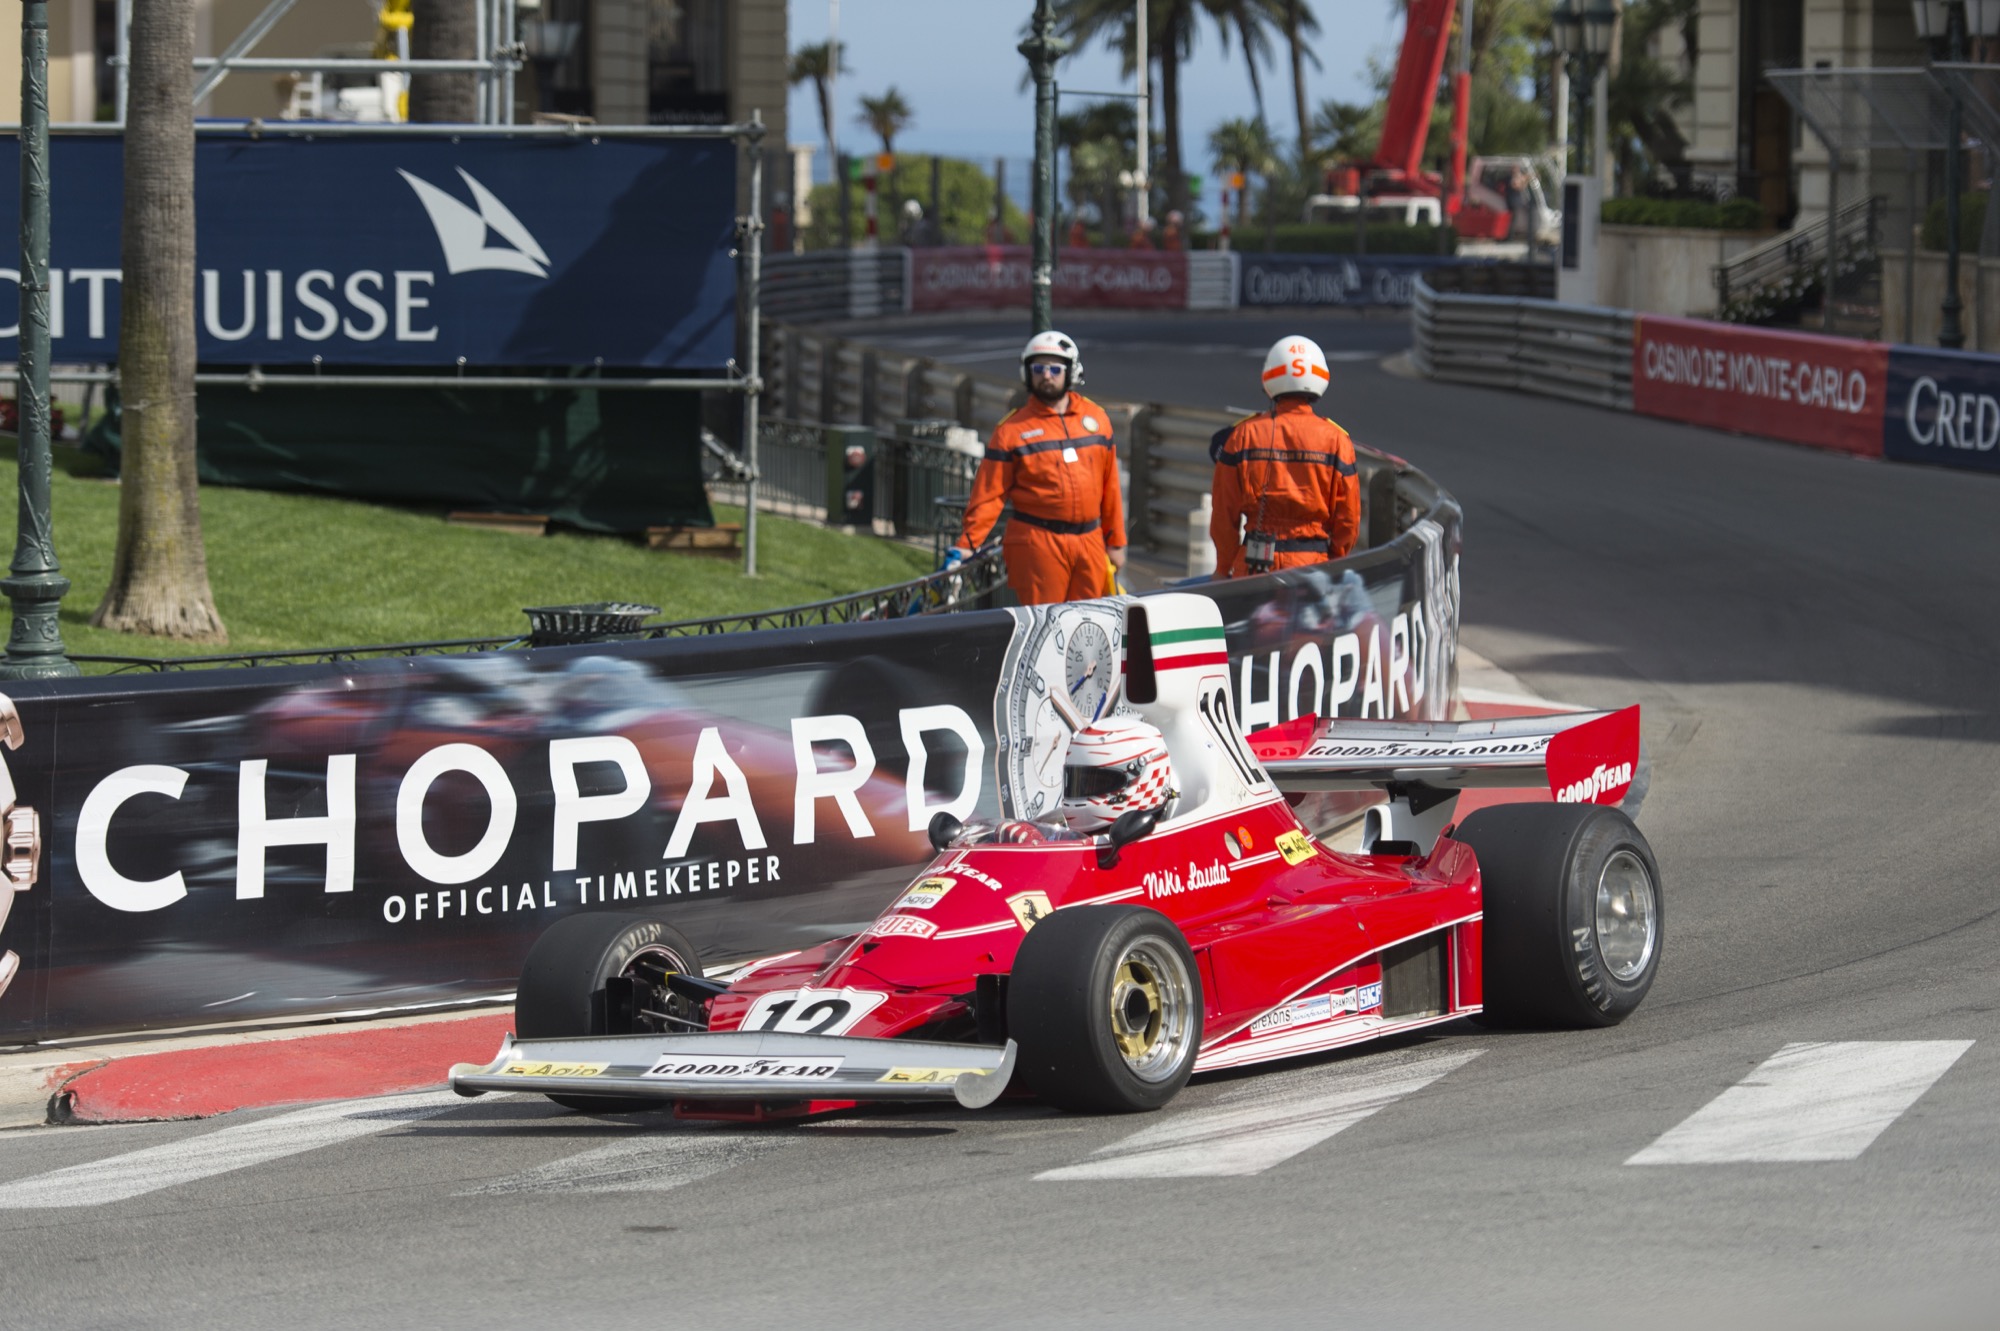 Chopard Monaco Historique Race Edition